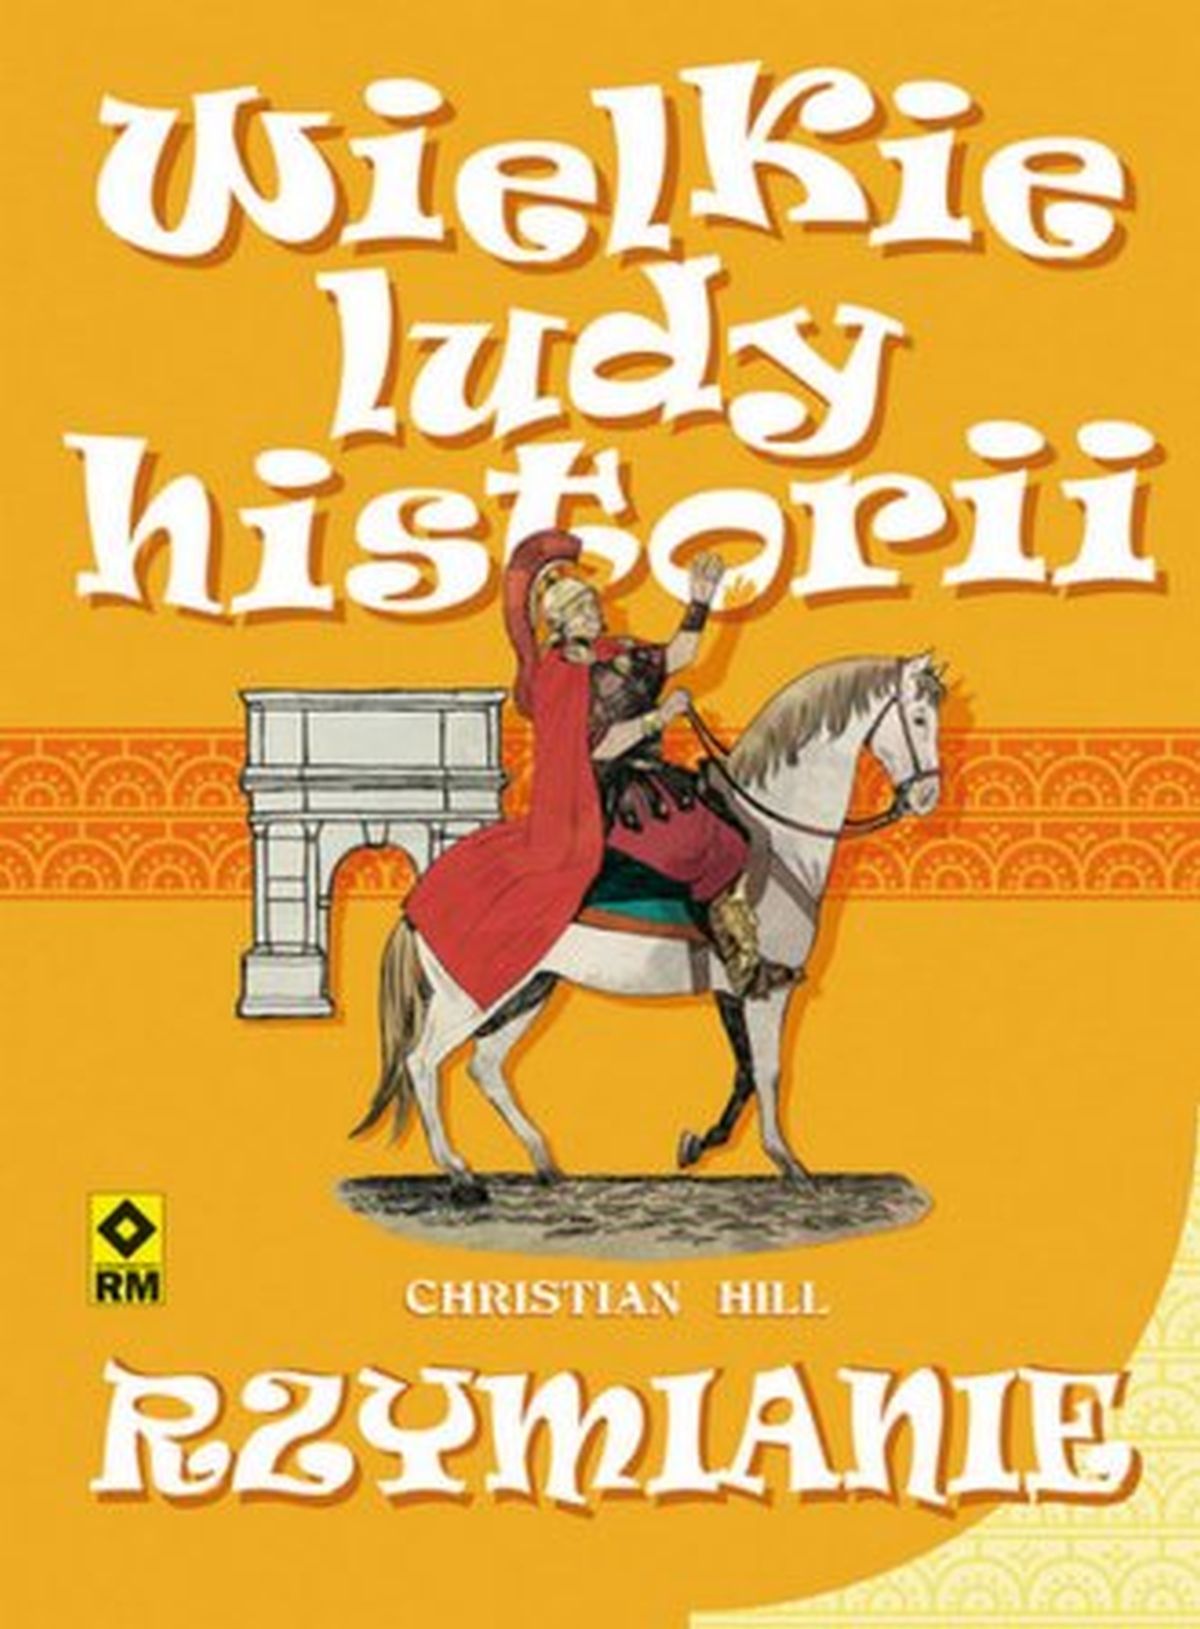 Christian Hill, Rzymianie. Wielkie ludy historii